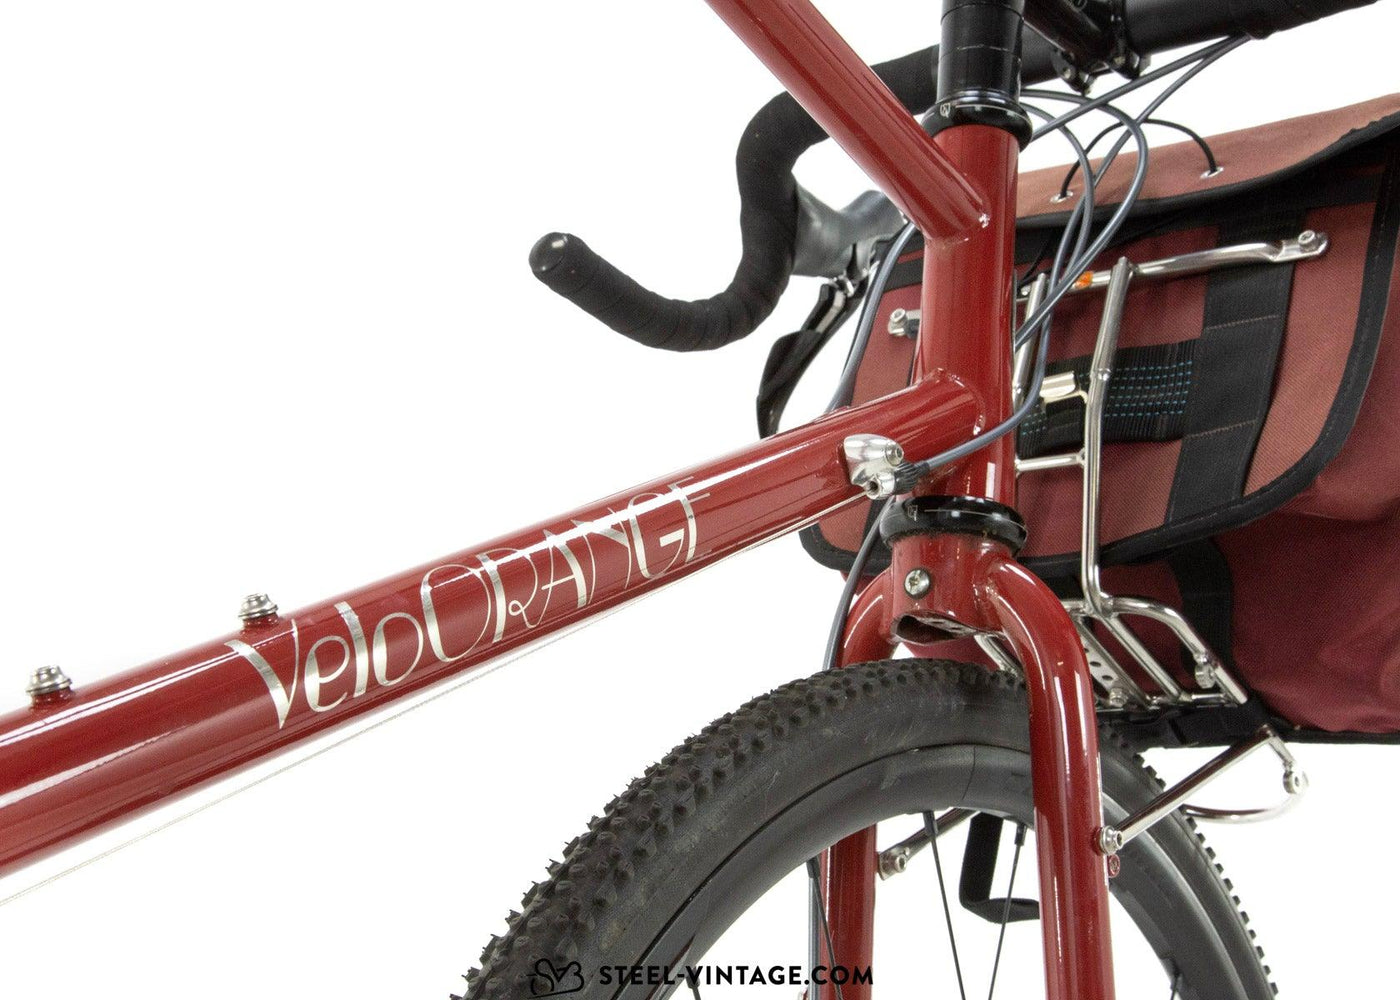 Velo Orange Pass Hunter Randonneur Gravel Bike - Steel Vintage Bikes